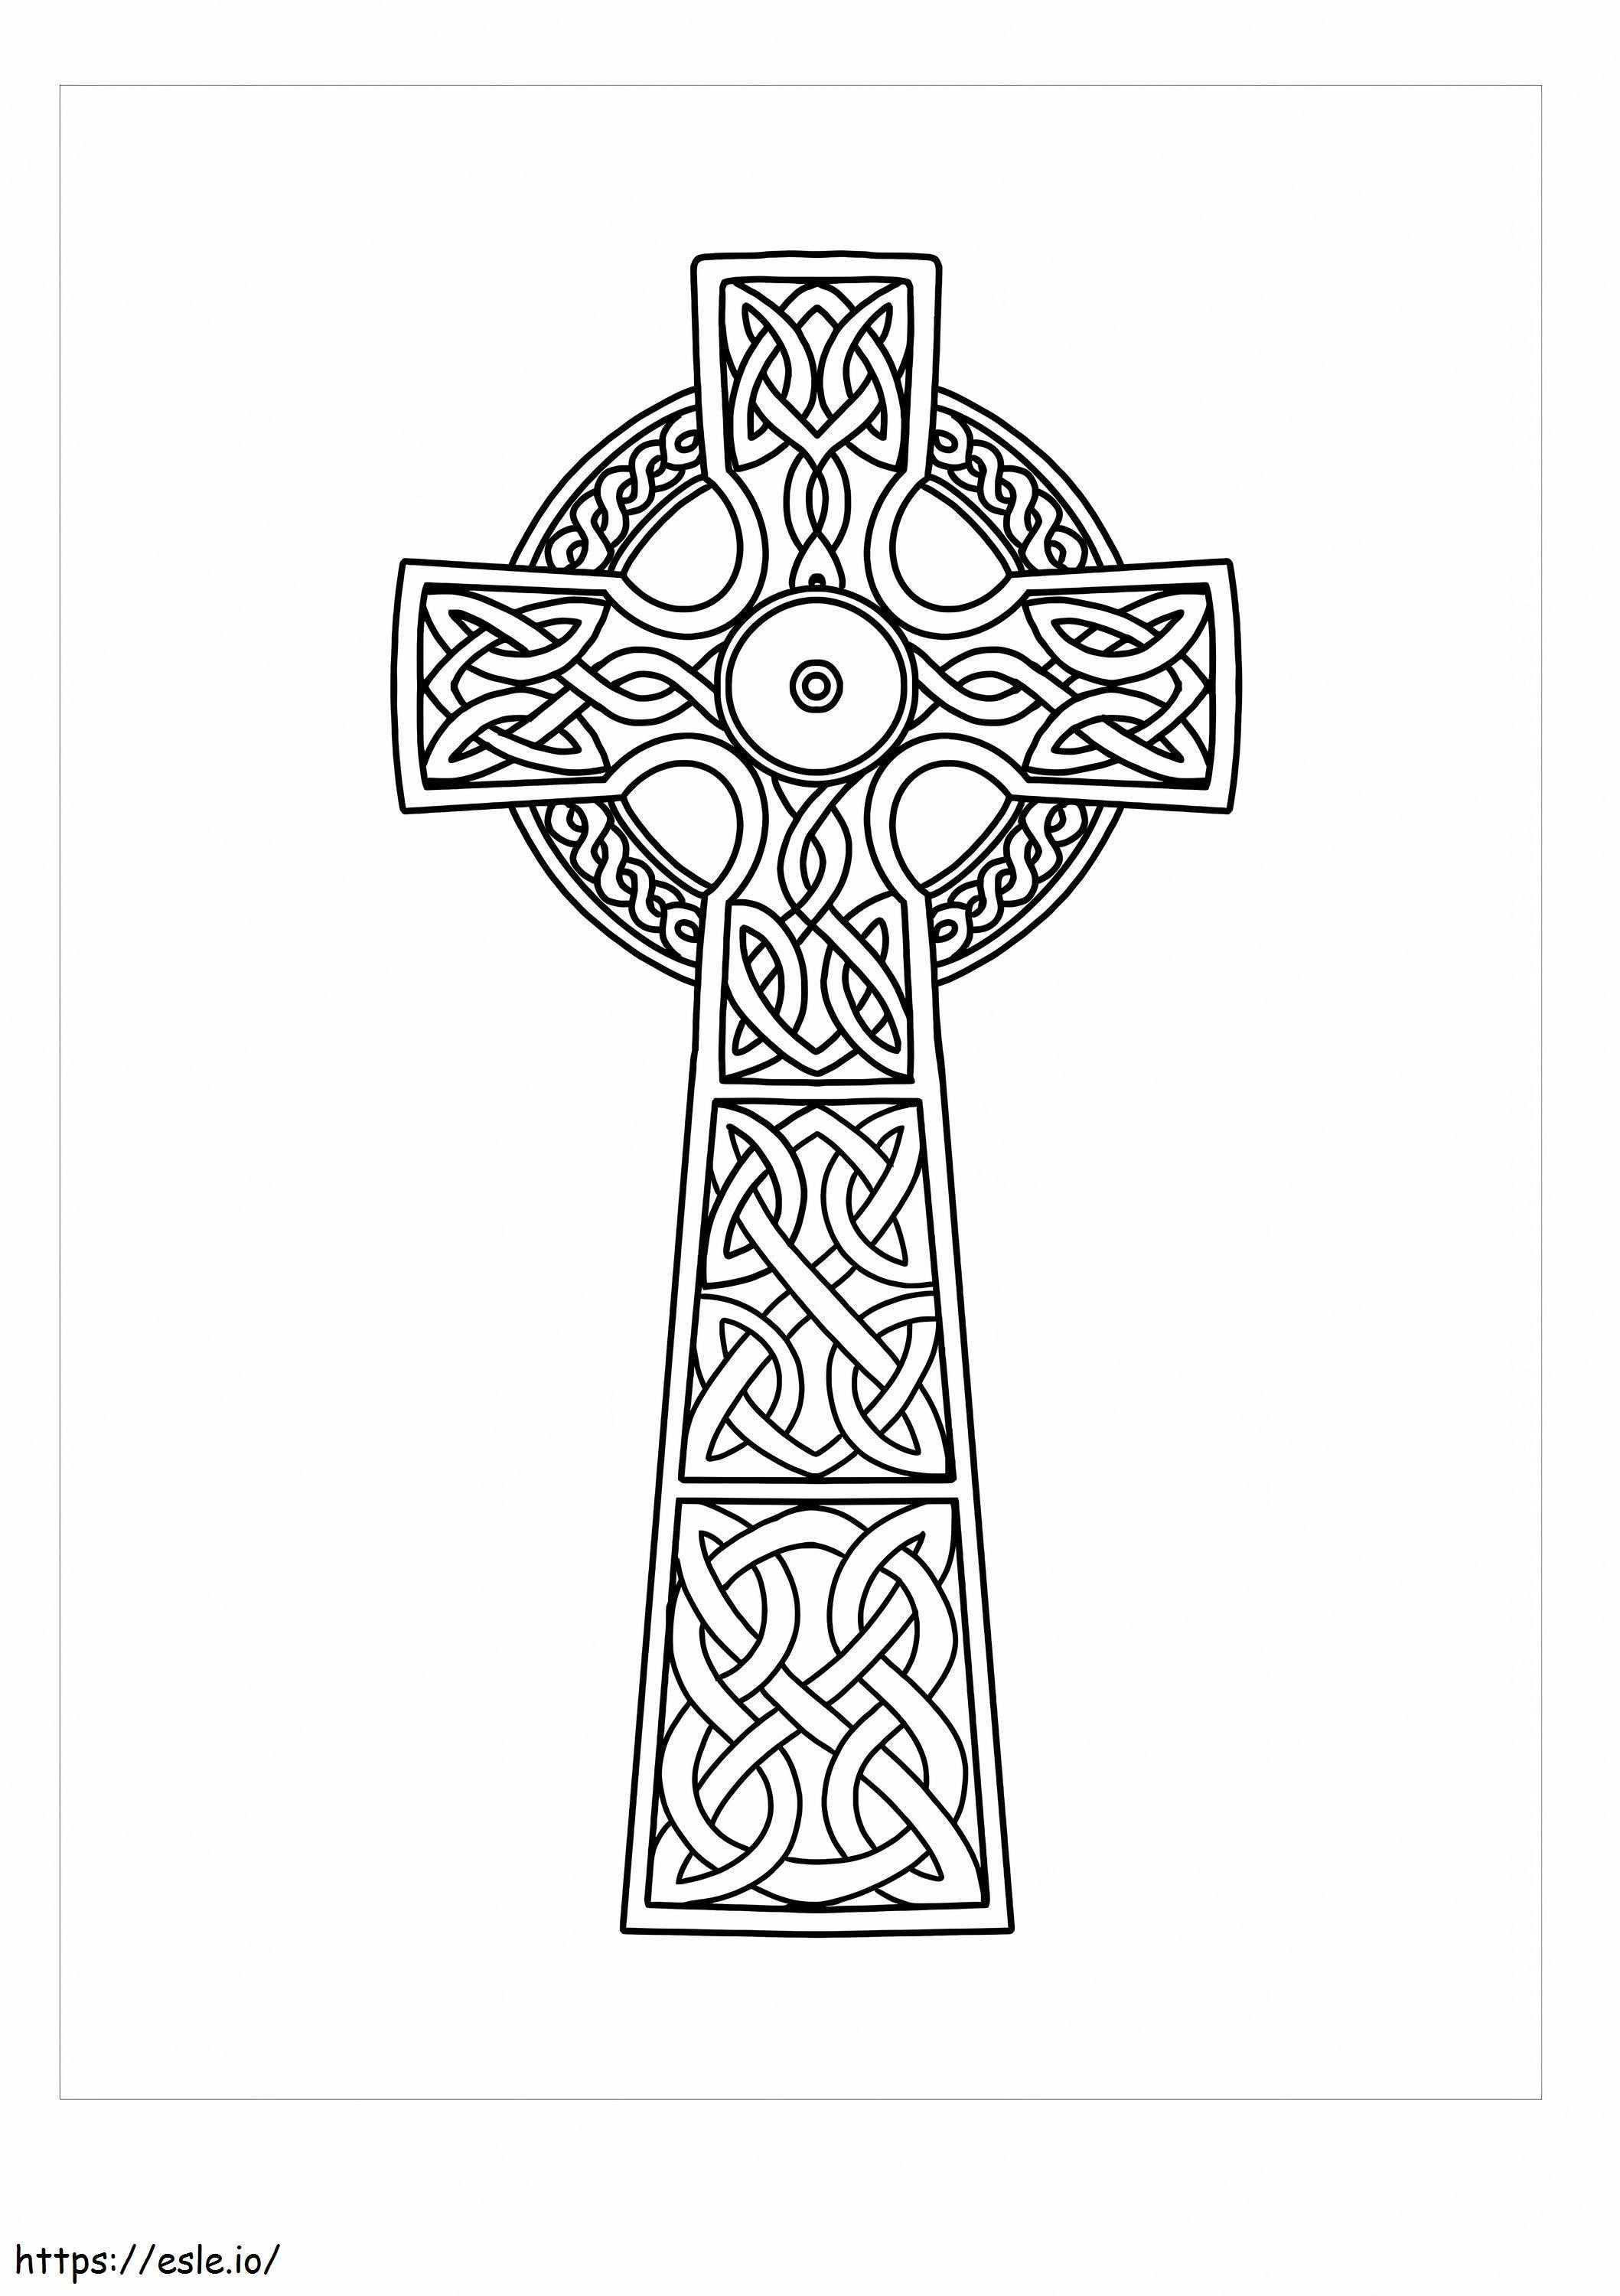 Keltisches Kreuz ausmalbilder